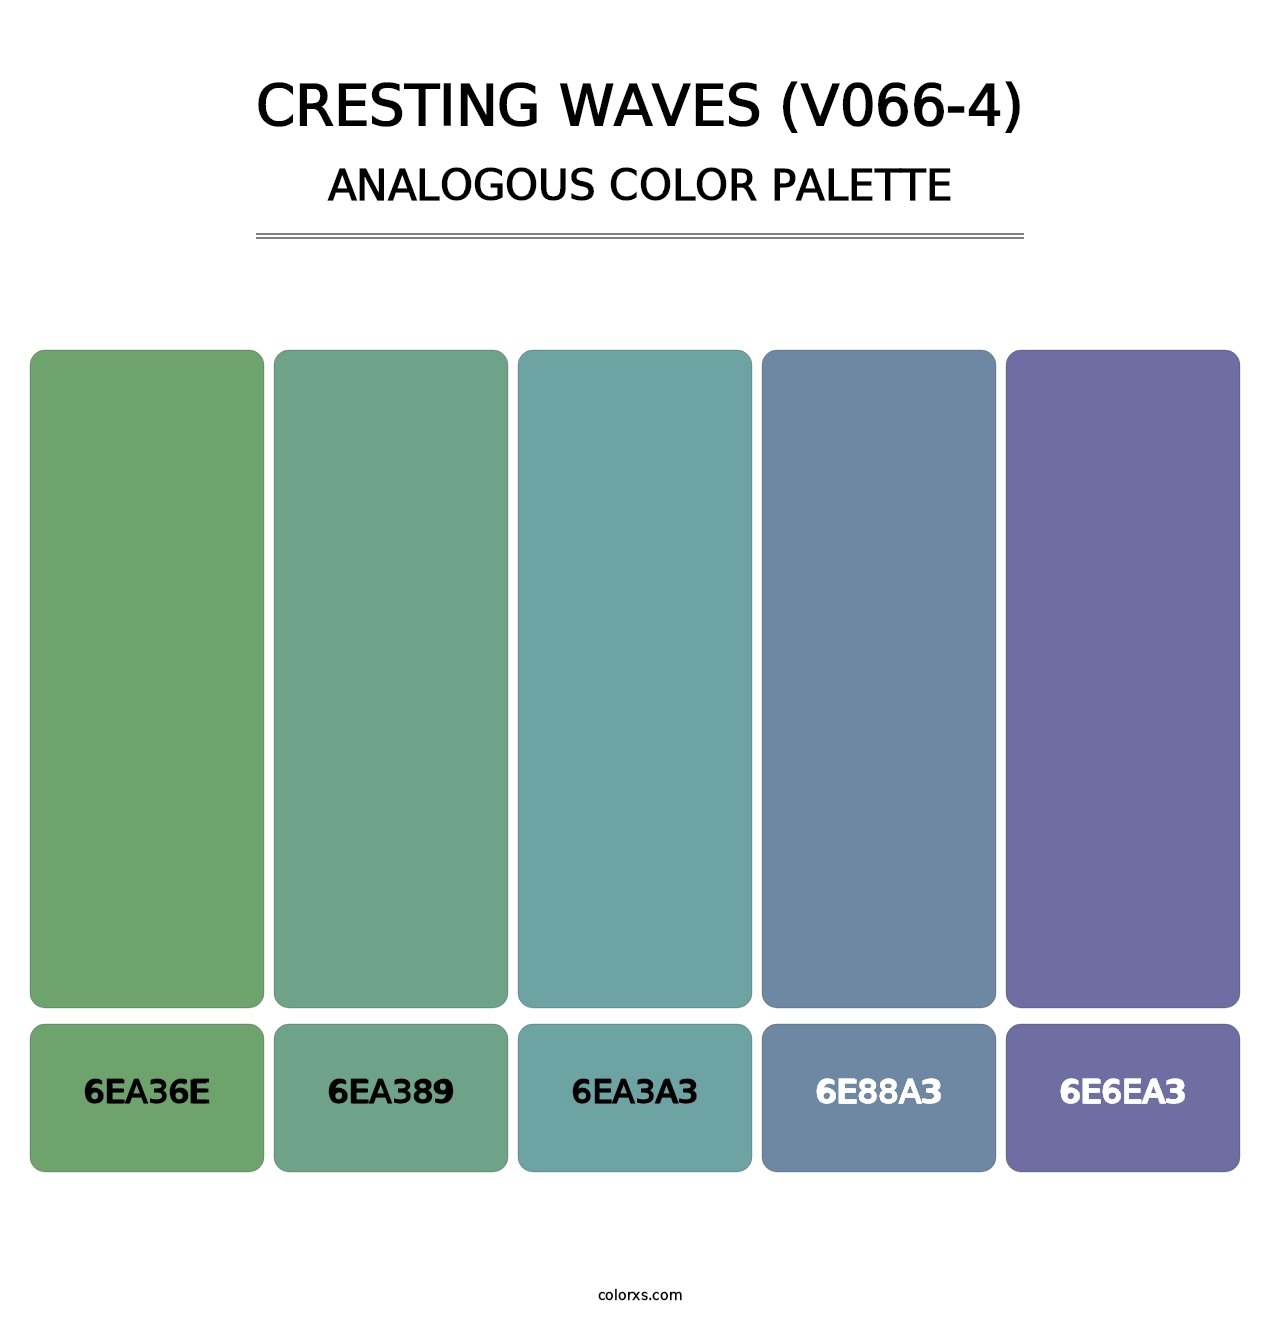 Cresting Waves (V066-4) - Analogous Color Palette